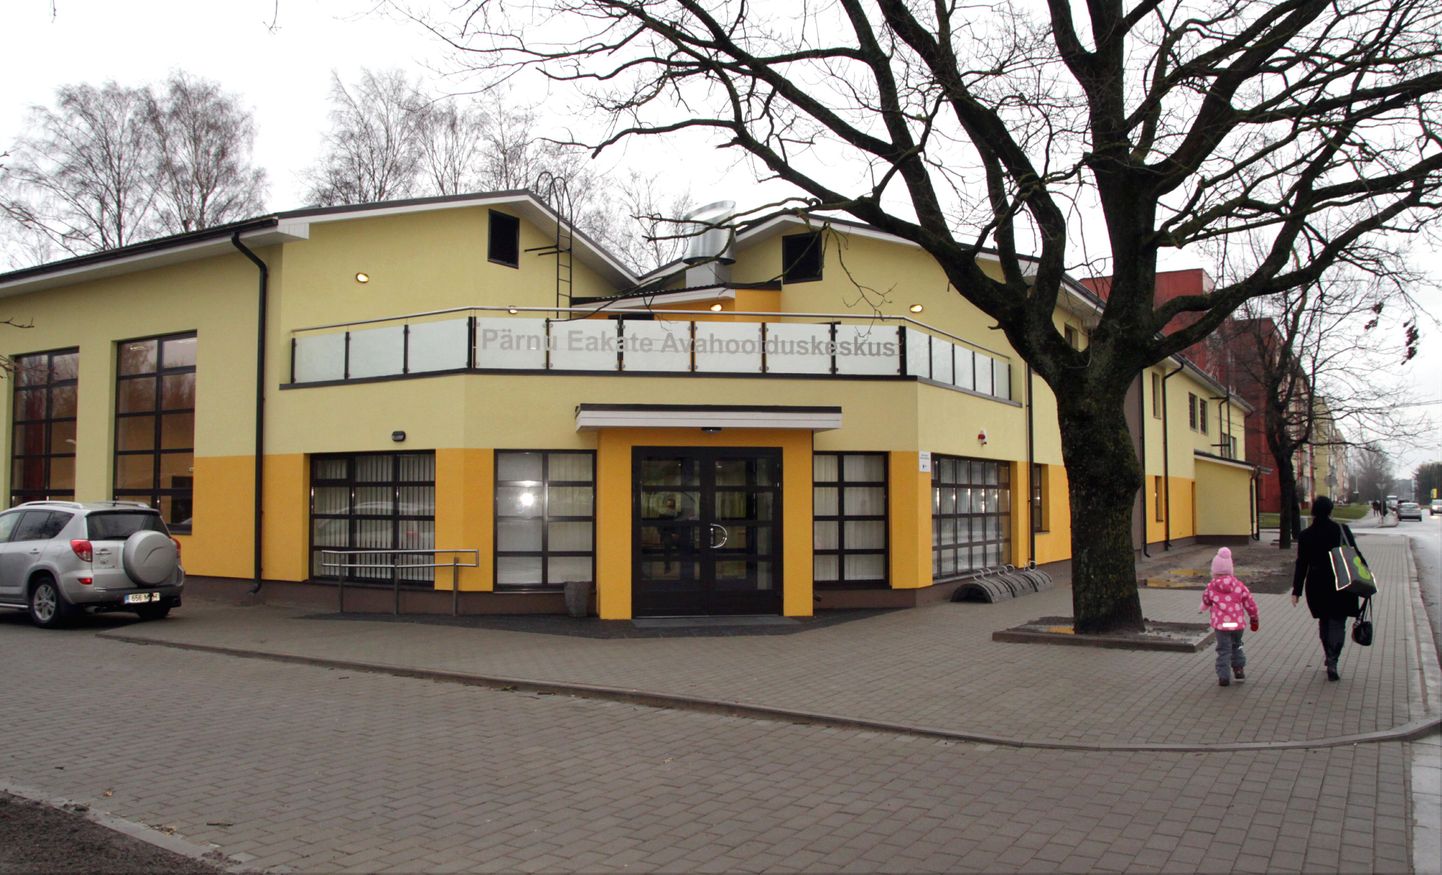 Pärnu eakate avahoolduskeskus Metsa tänaval.